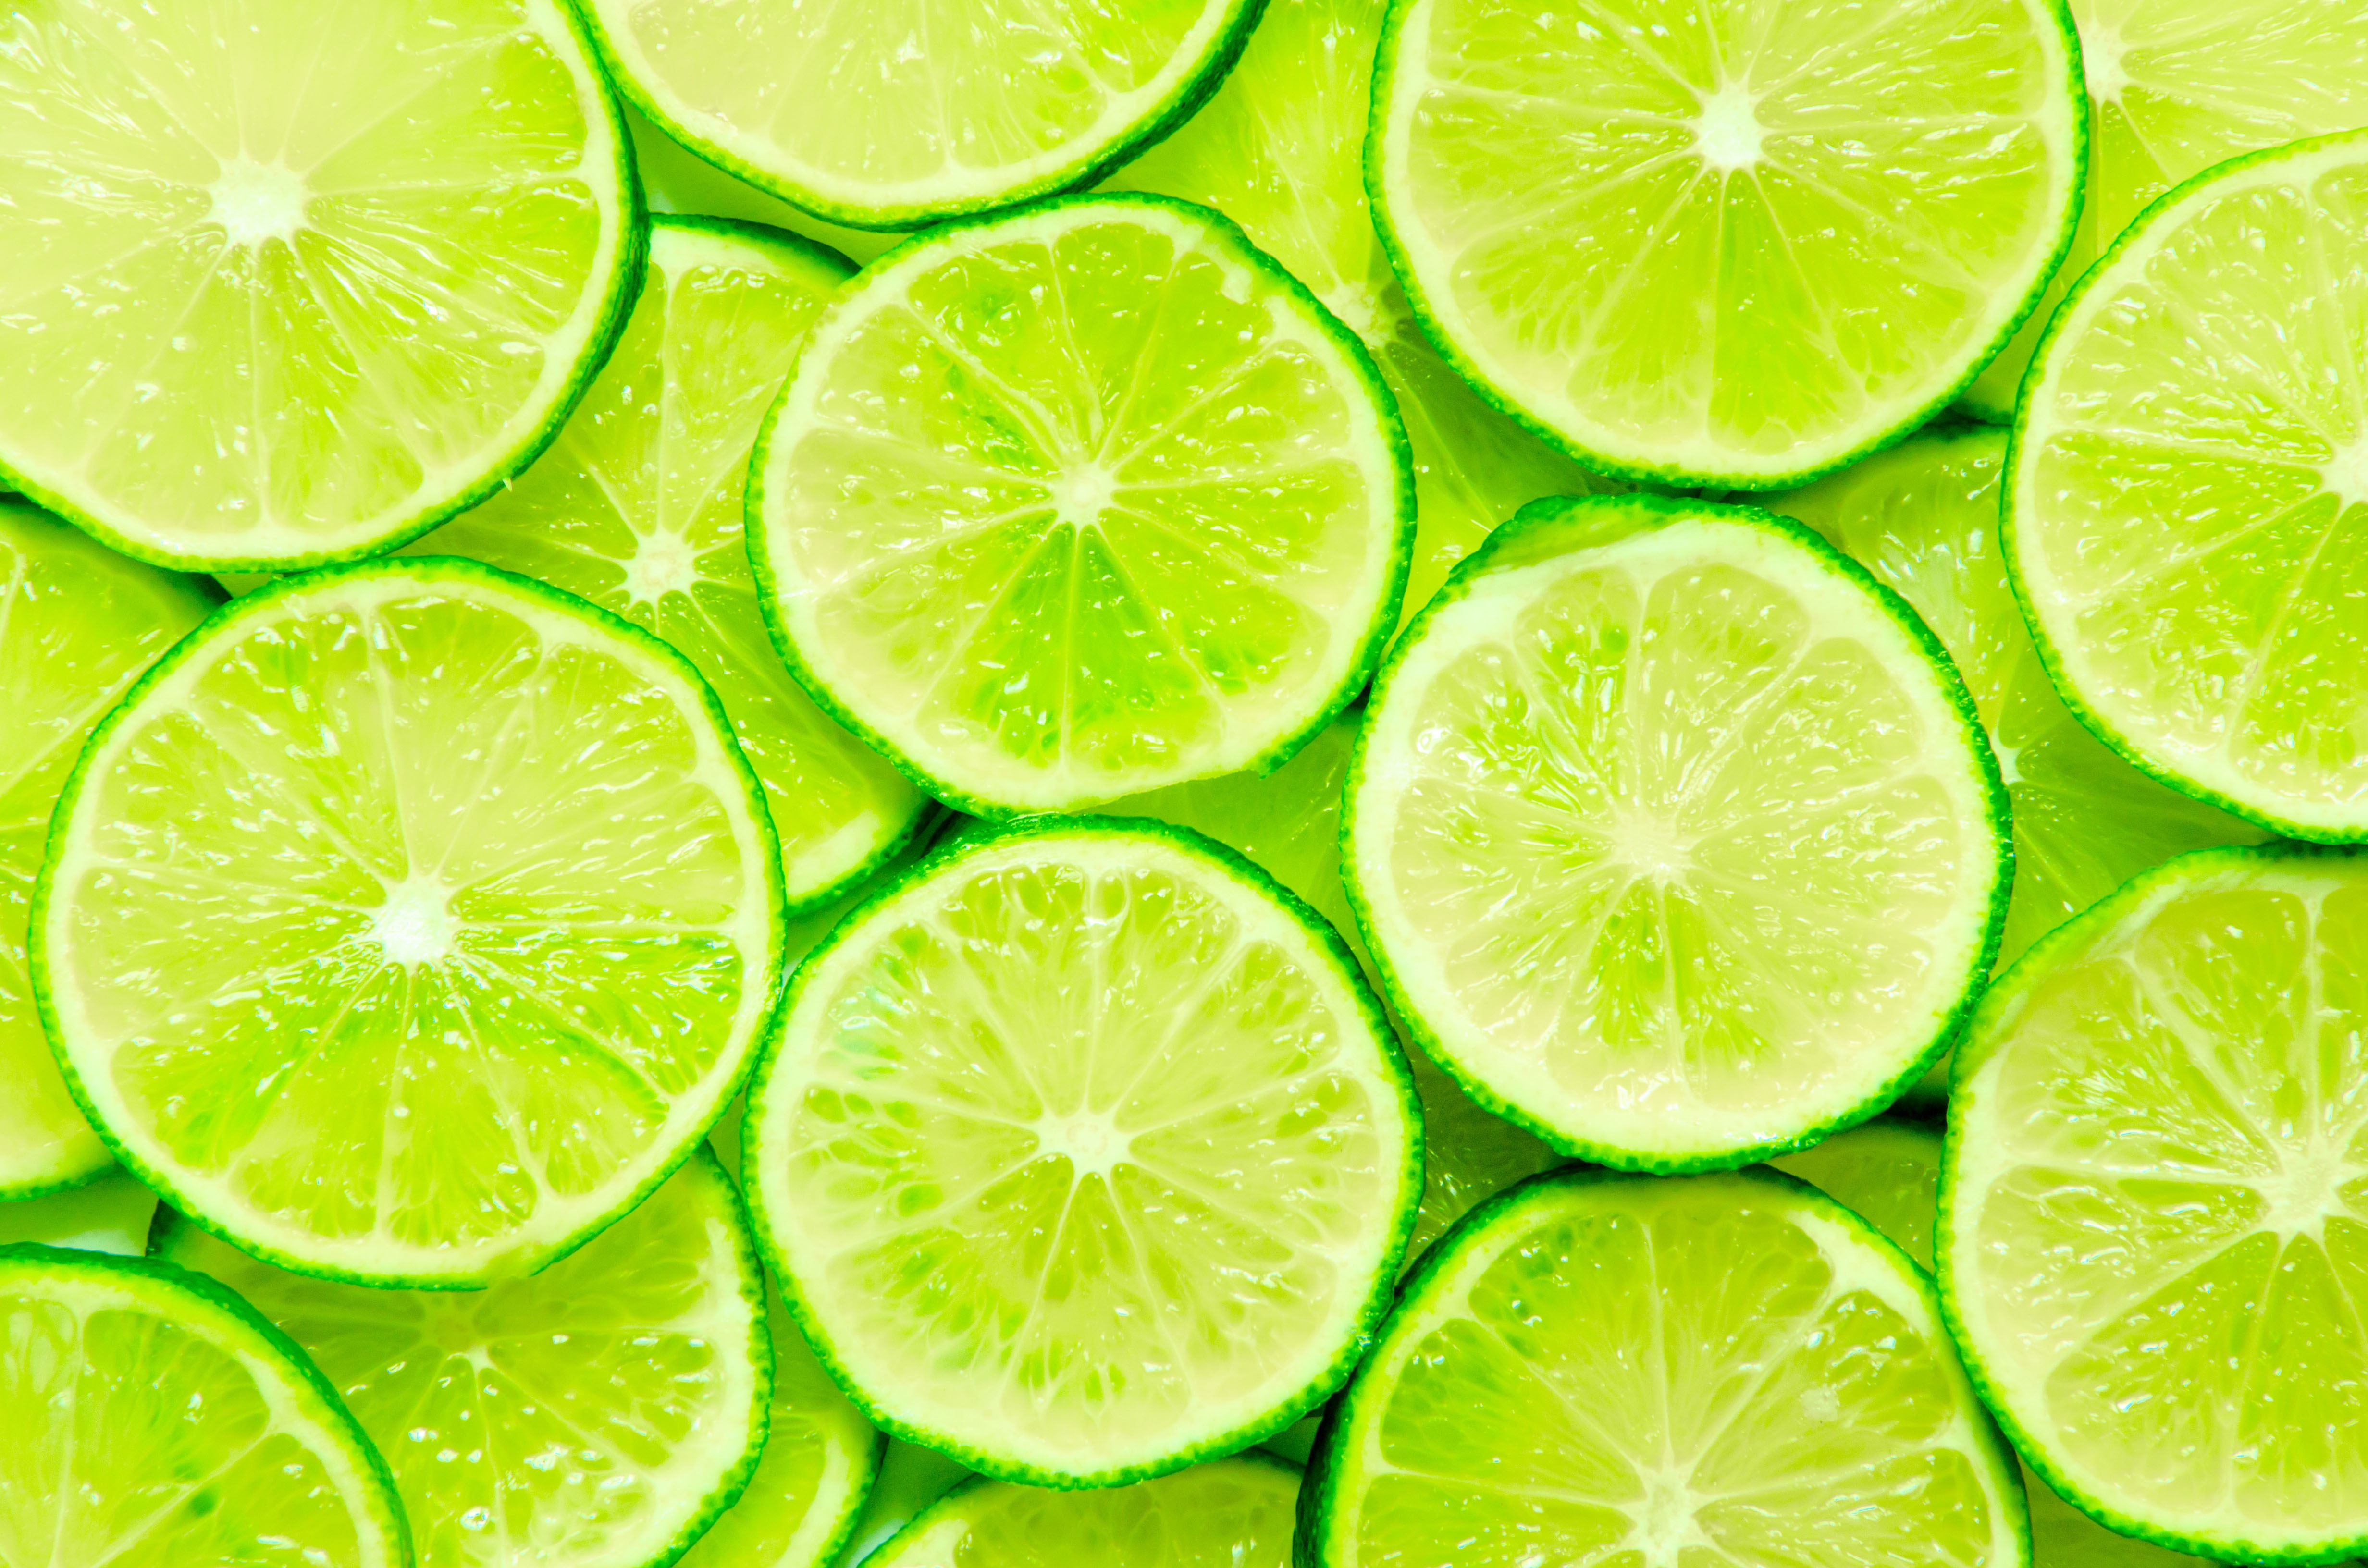 citrus wallpaper,lime,key lime,citrus,green,persian lime